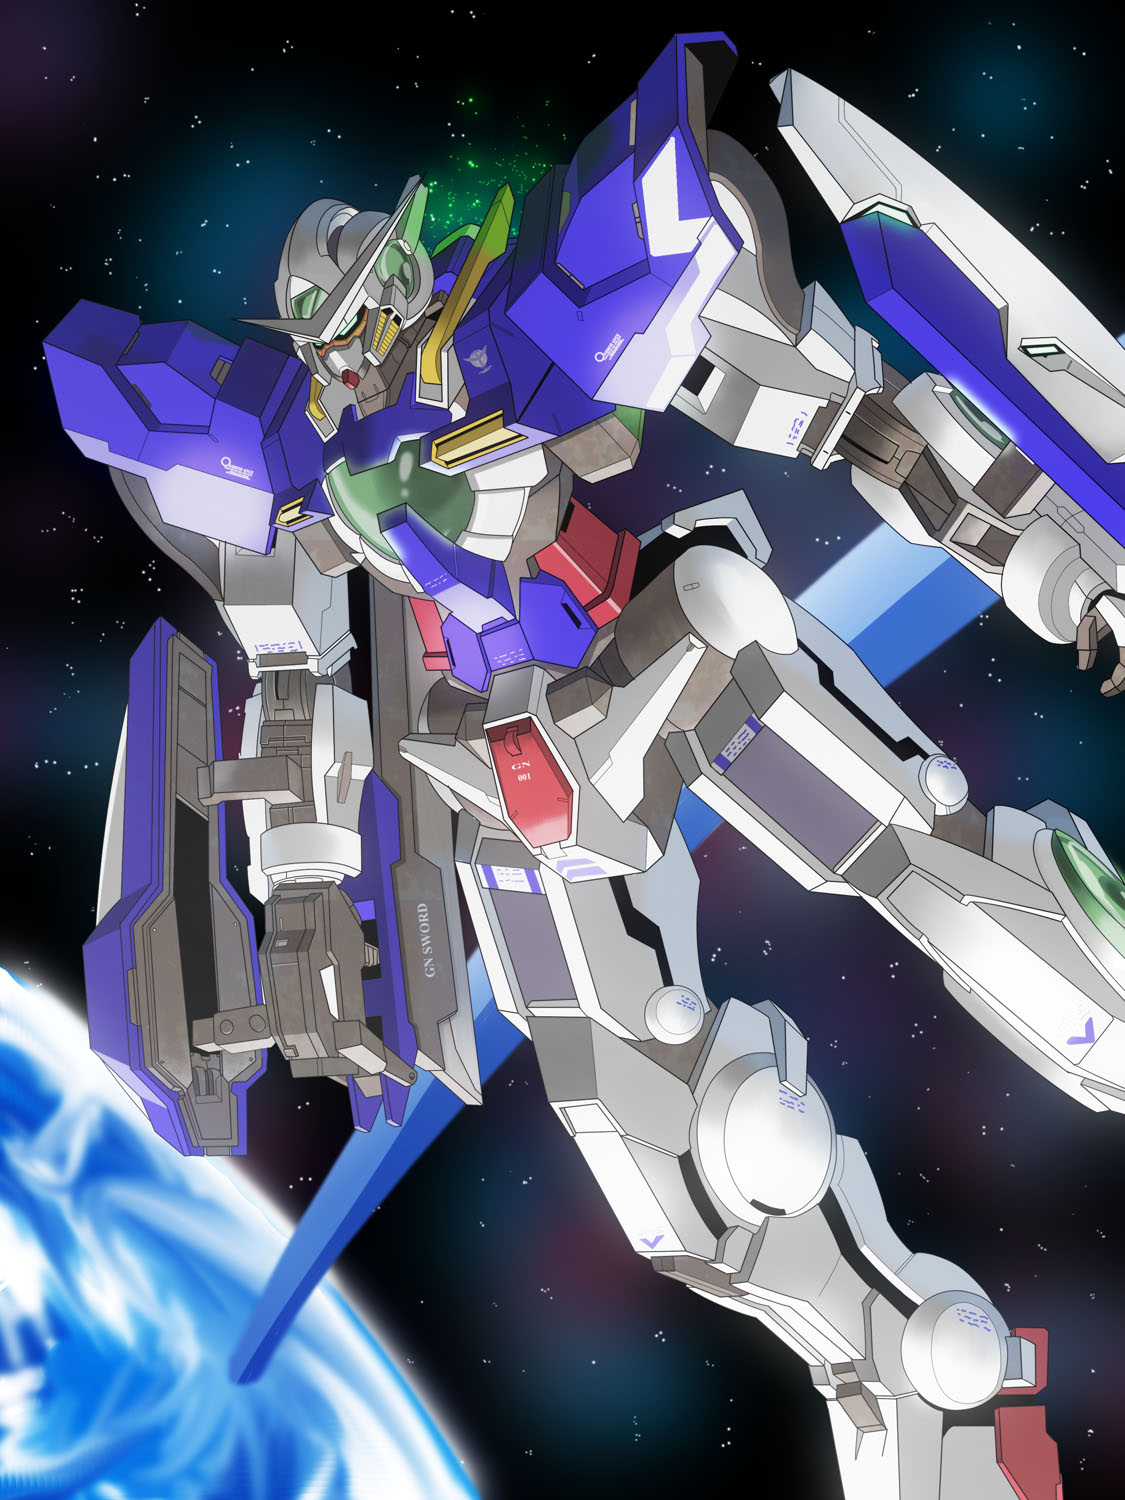 Anime 1125x1500 anime mechs Gundam Super Robot Taisen Mobile Suit Gundam 00 Gundam Exia artwork digital art fan art